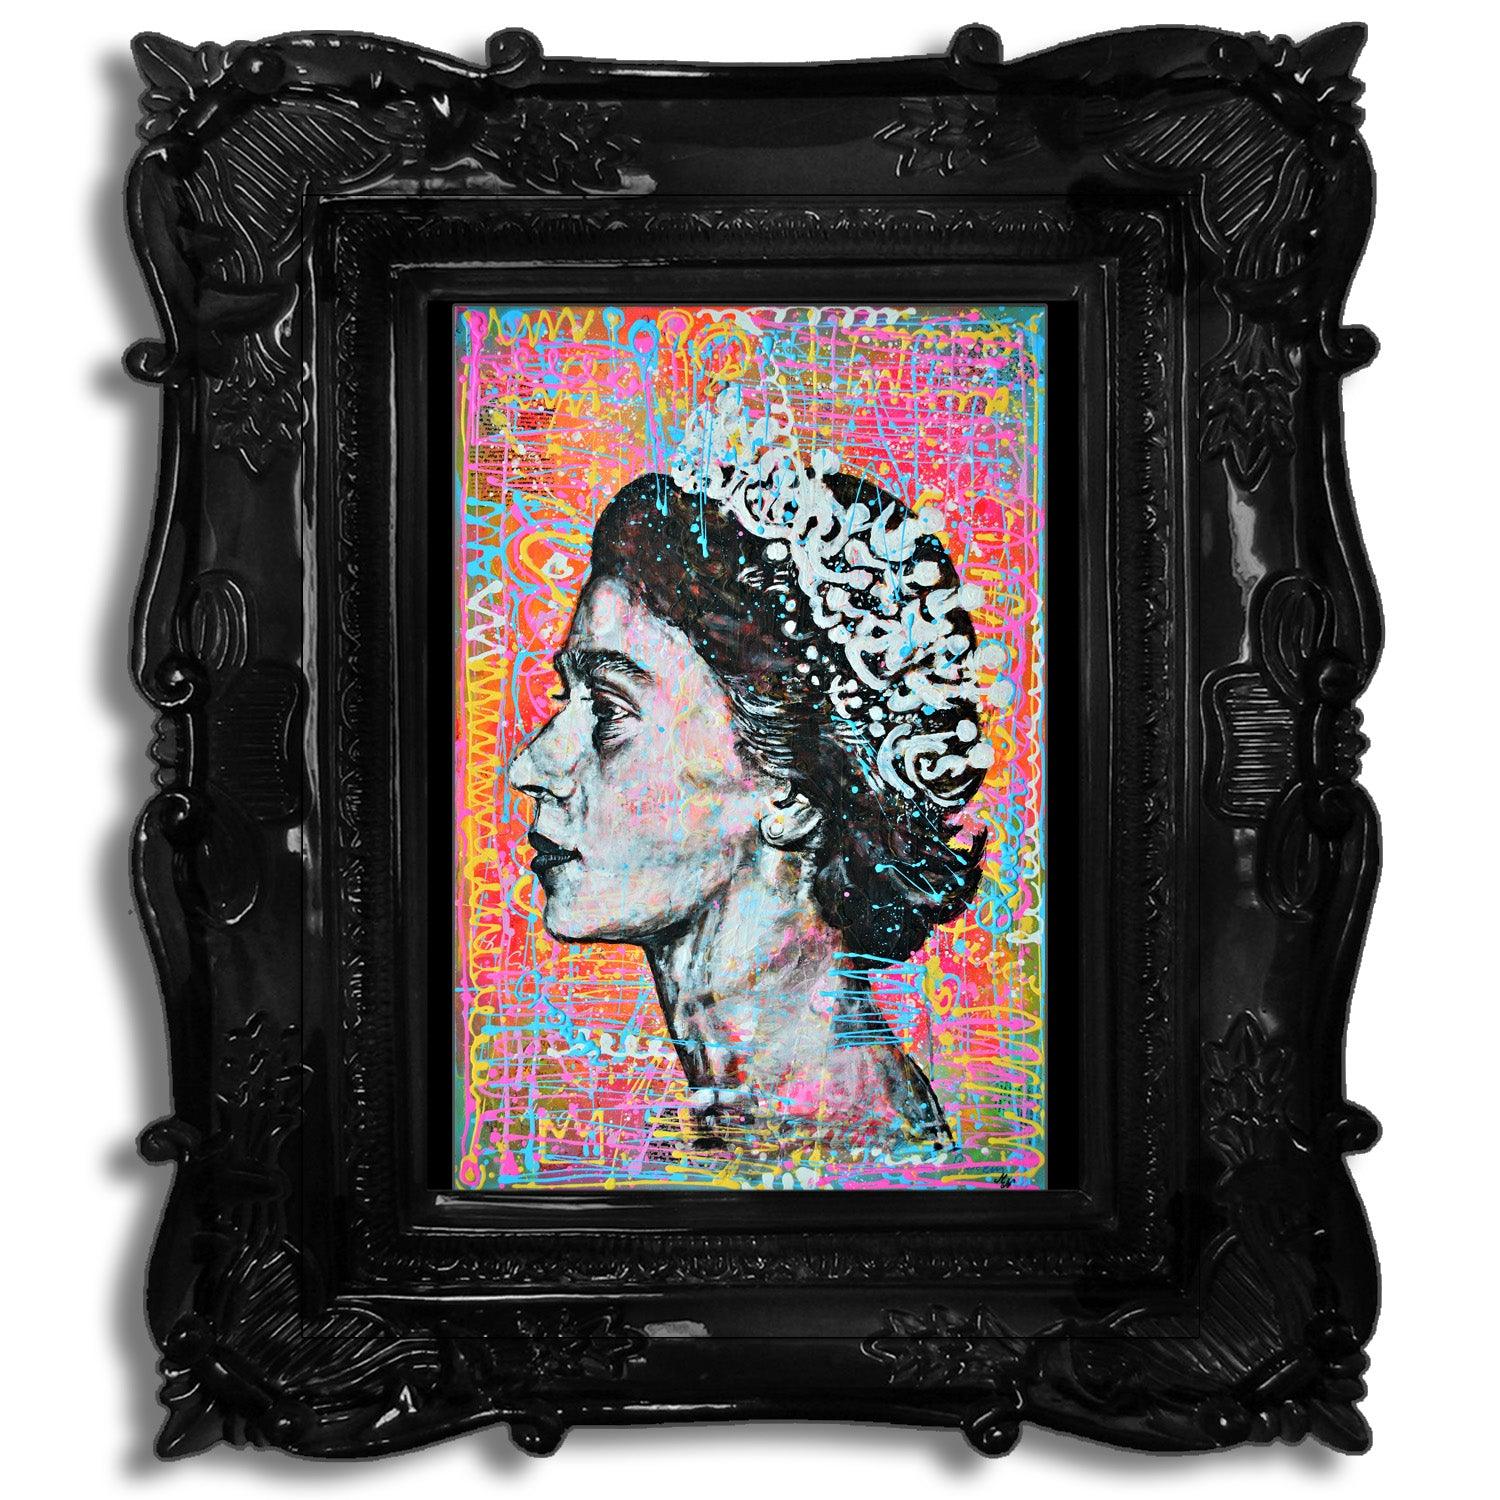 Queen Elizabeth II - Modern Pop Art Portrait Art - ArtCursor